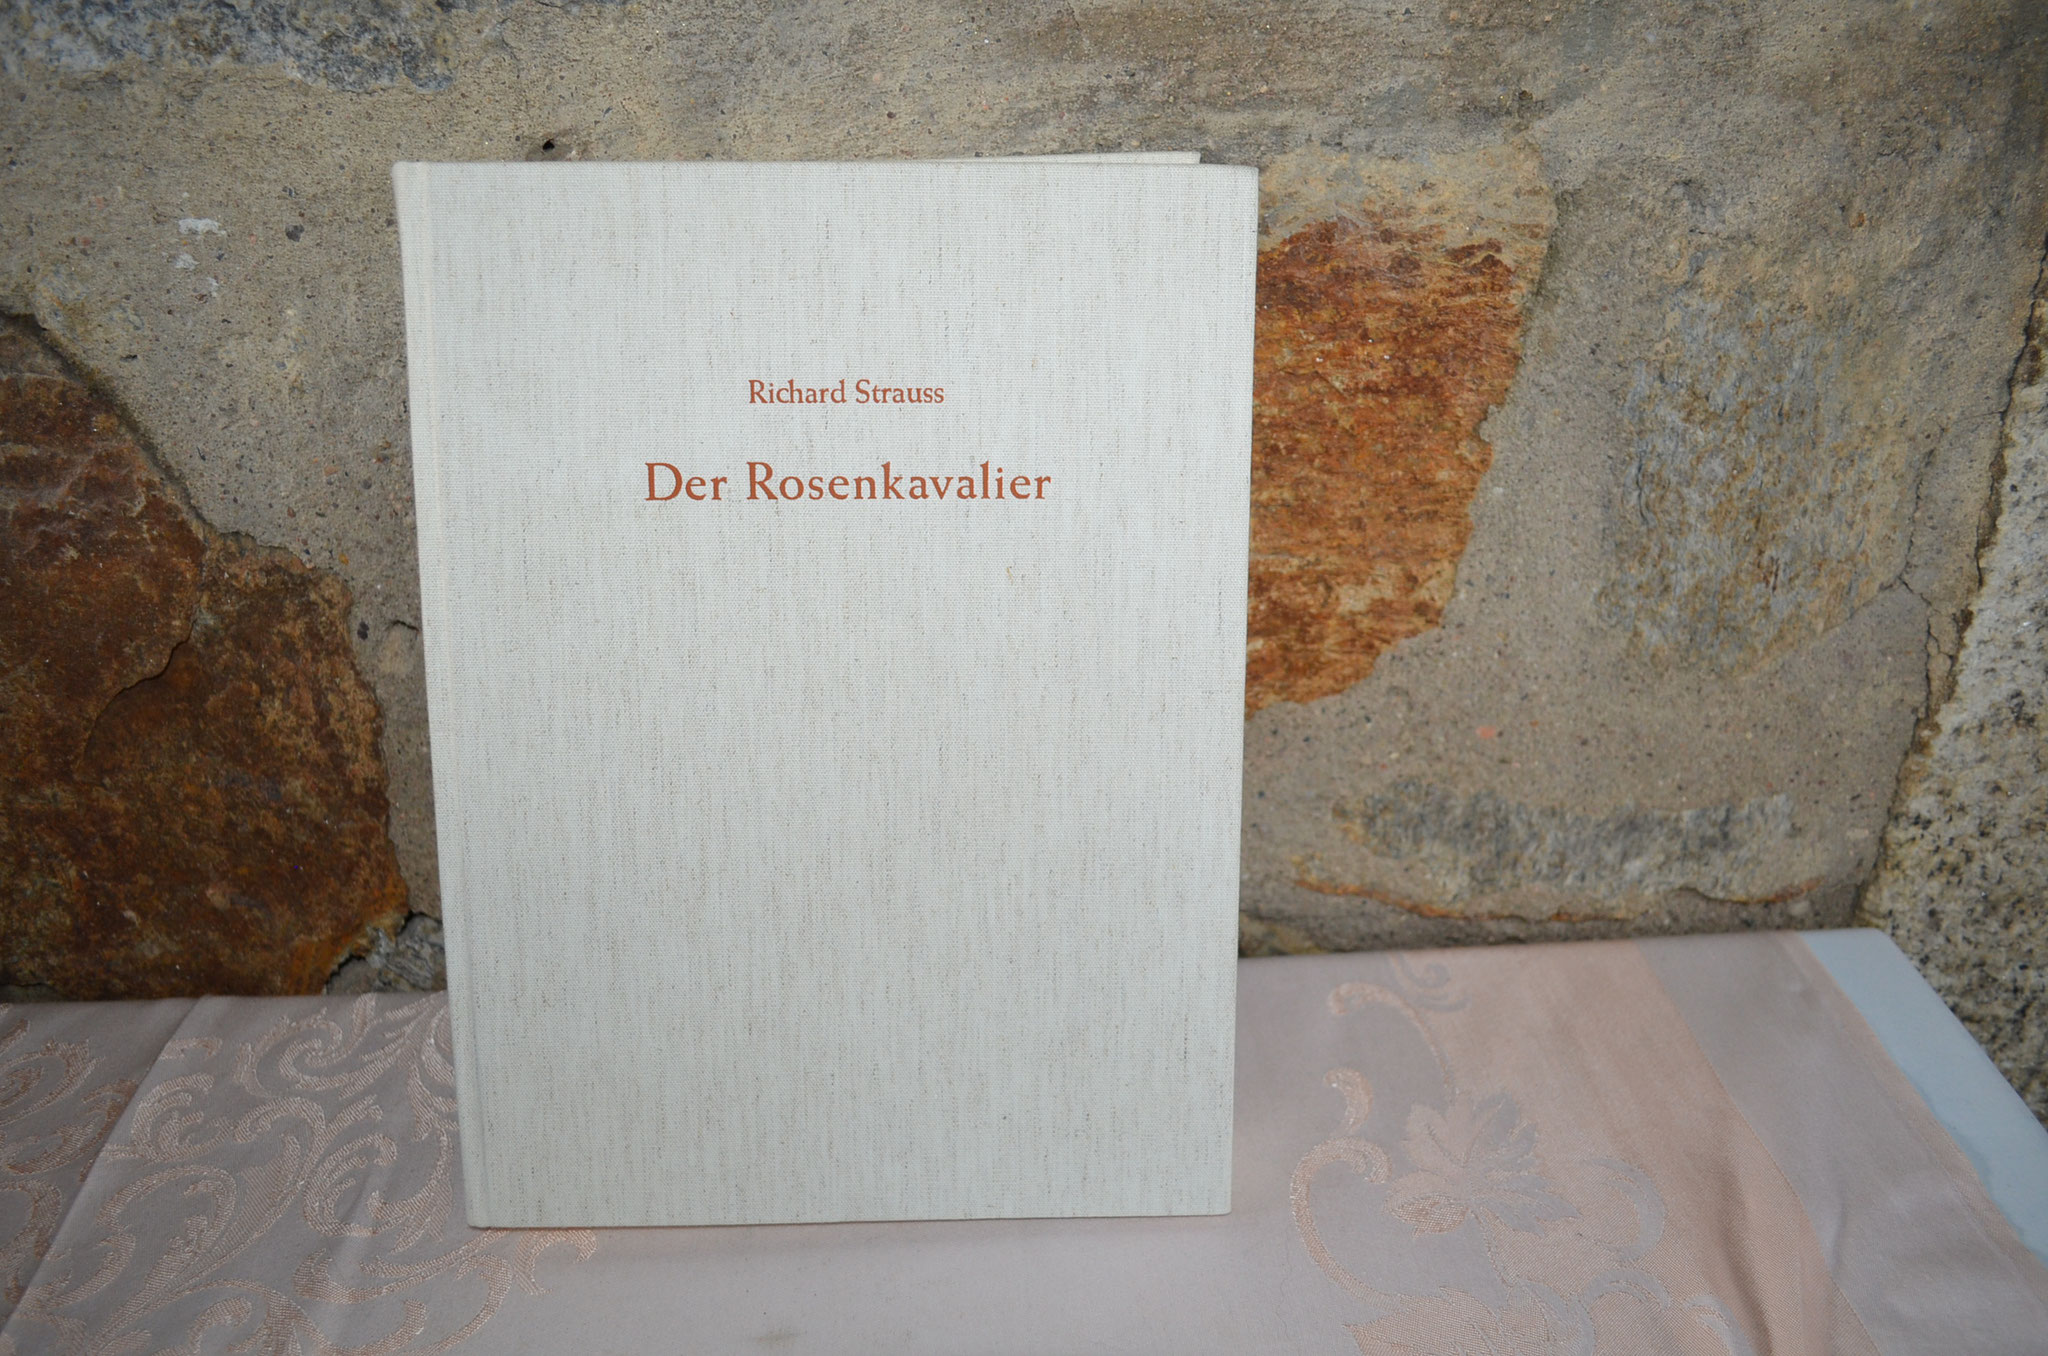 Notenbuch, 442 Seiten, Der Rosenkavalier, Richard Strauss. Preis: 8,50 €